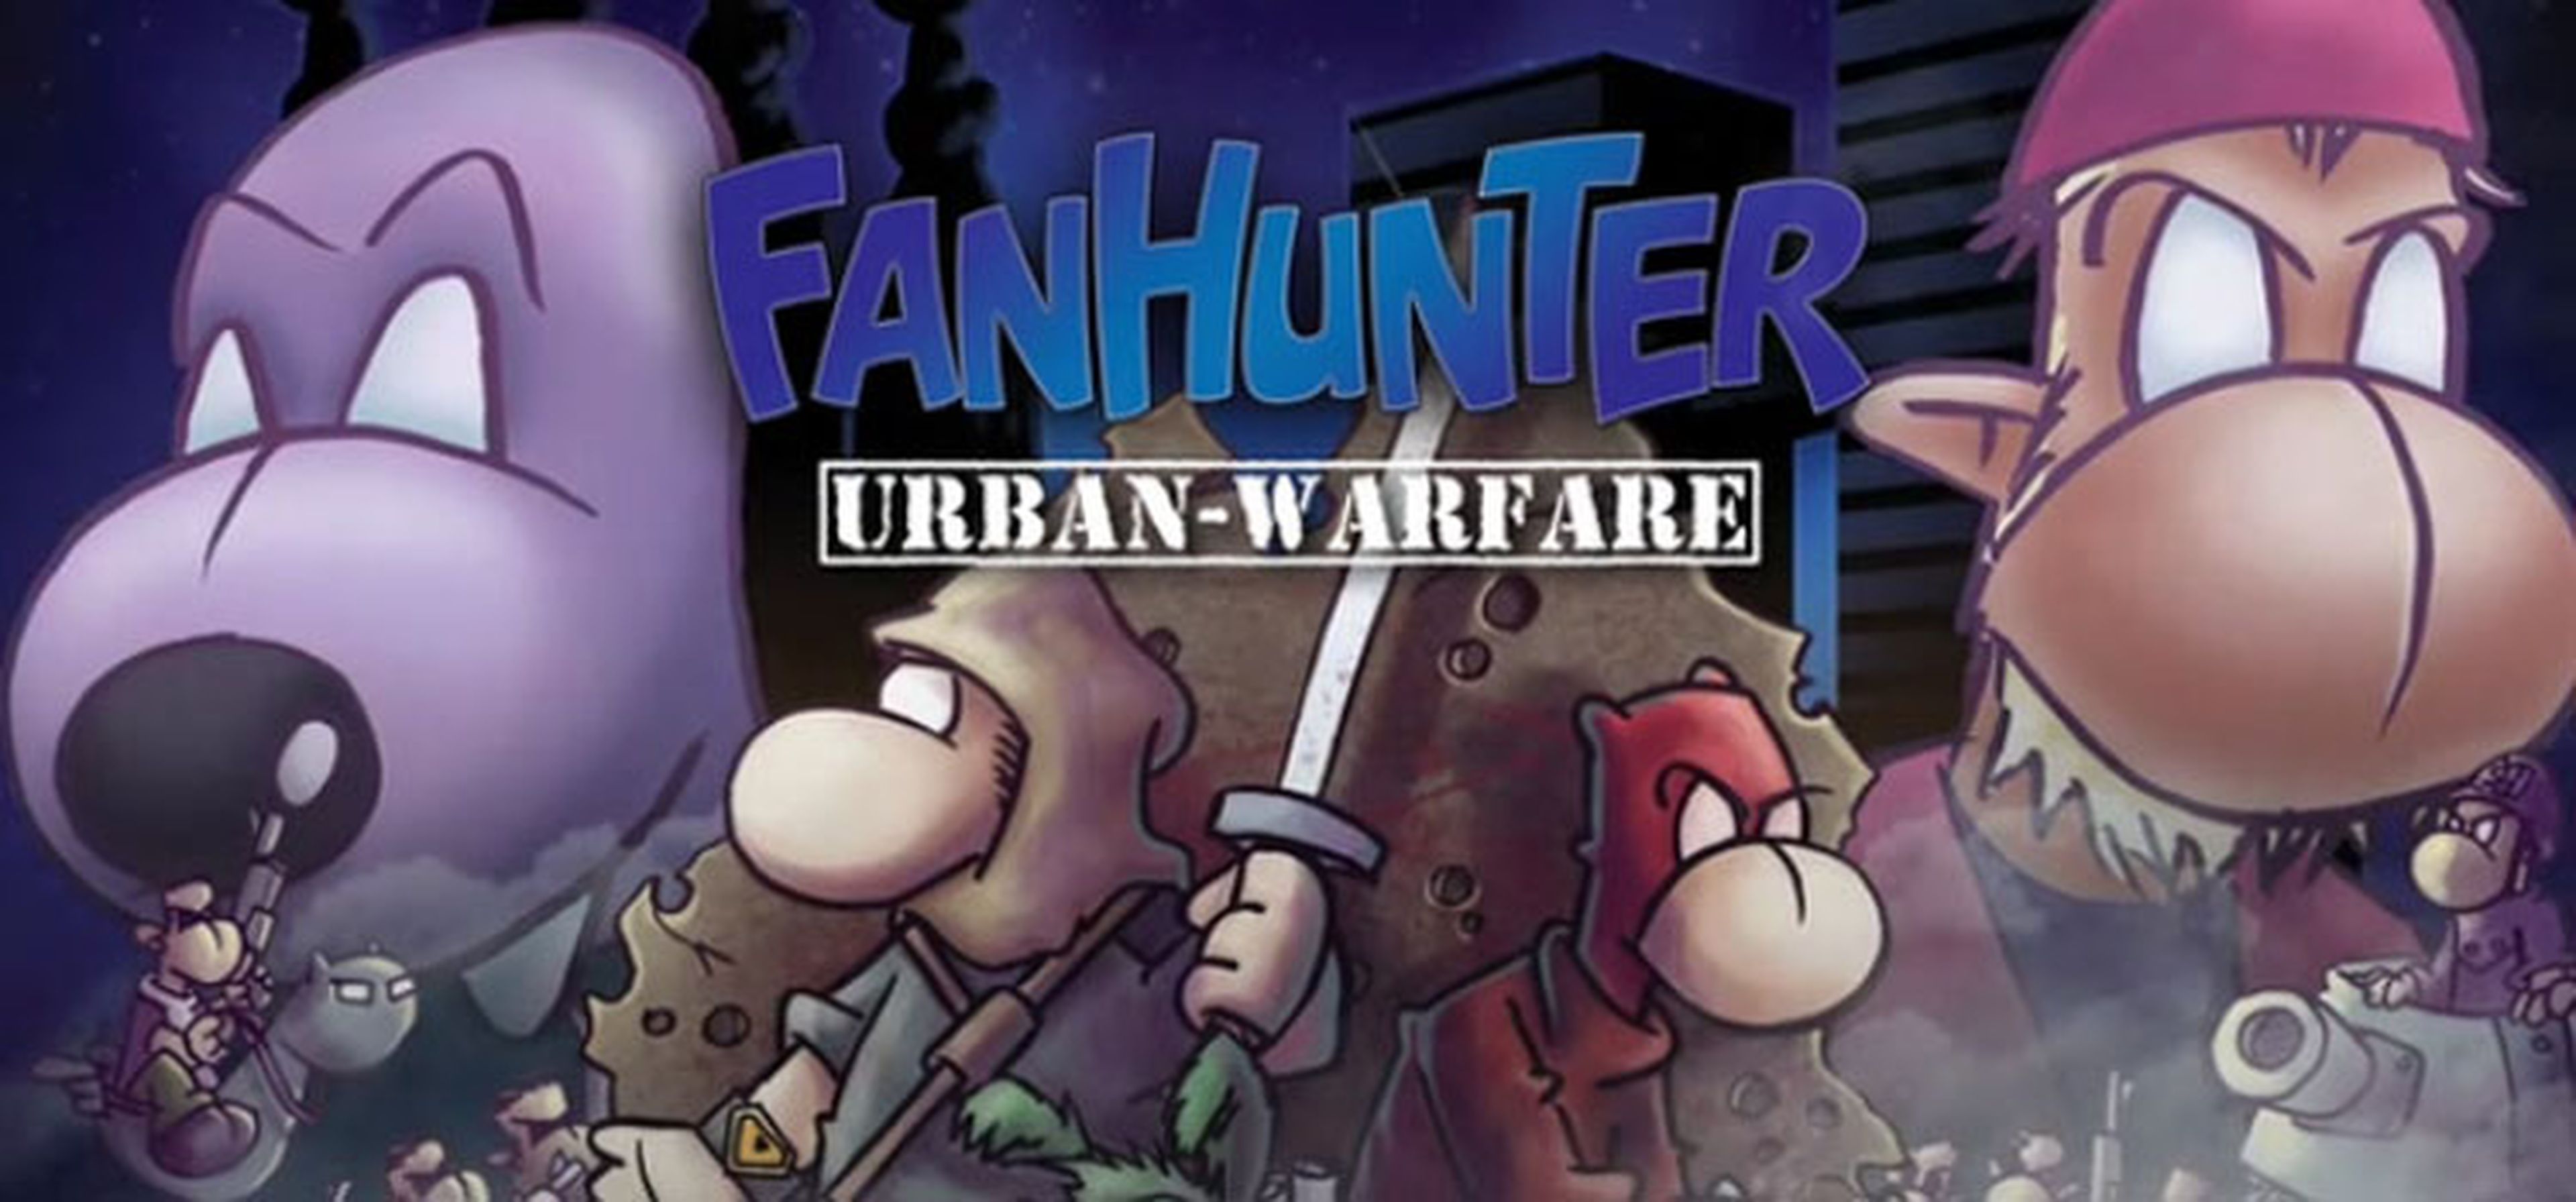 Fanhunter Urban Warfare - Análisis del juego de mesa